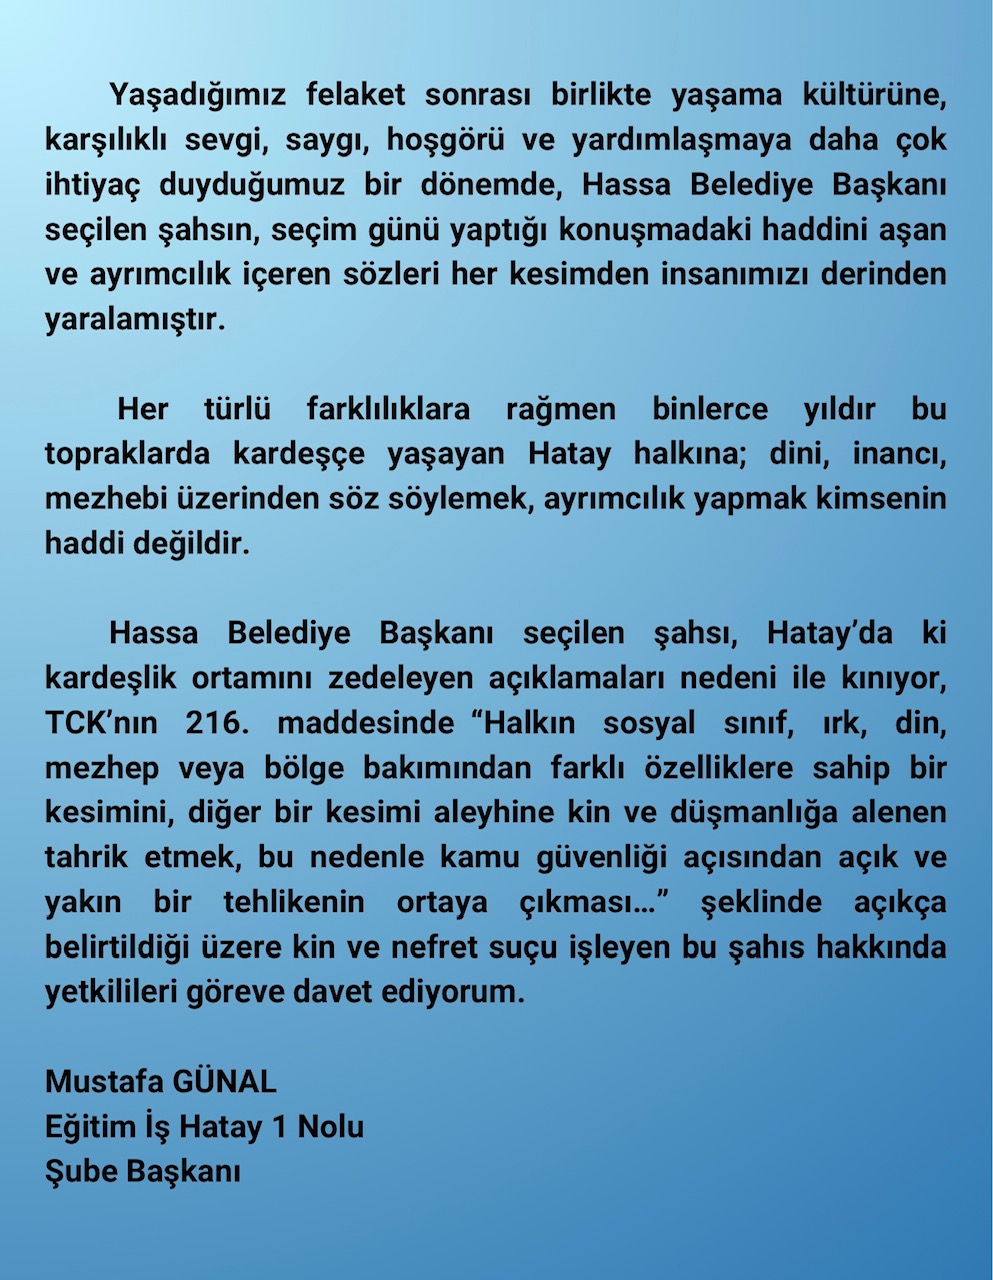 Hassa'da AKP'li Belediye Başkanı Selahattin Çolak'ın seçim sonrası yaptığı konuşmada Alevileri hedef alması ve onlarla hesaplaşacağını söylemesi tepkilere neden oldu. 